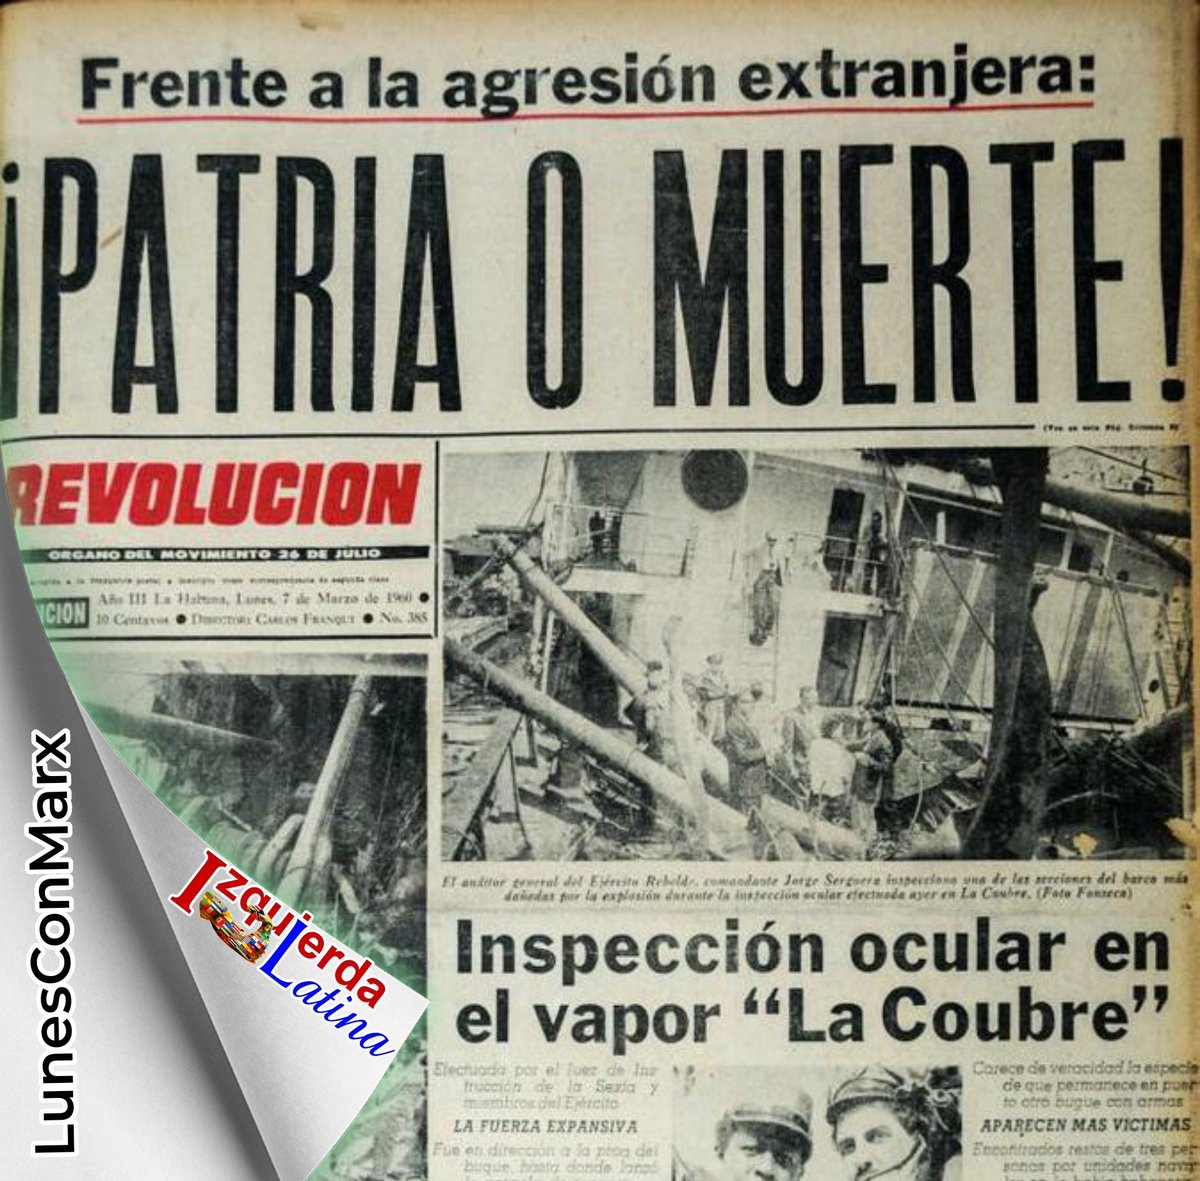 #LunesConMarx 
De las manos de los que nos acusan de terrorismo siempre nos ha llegado el dolor y la muerte, este #4DeMarzo recordamos como los EEUU vuelan en el puerto de la Habana el vapor La Coubre.
#IzquierdaLatina